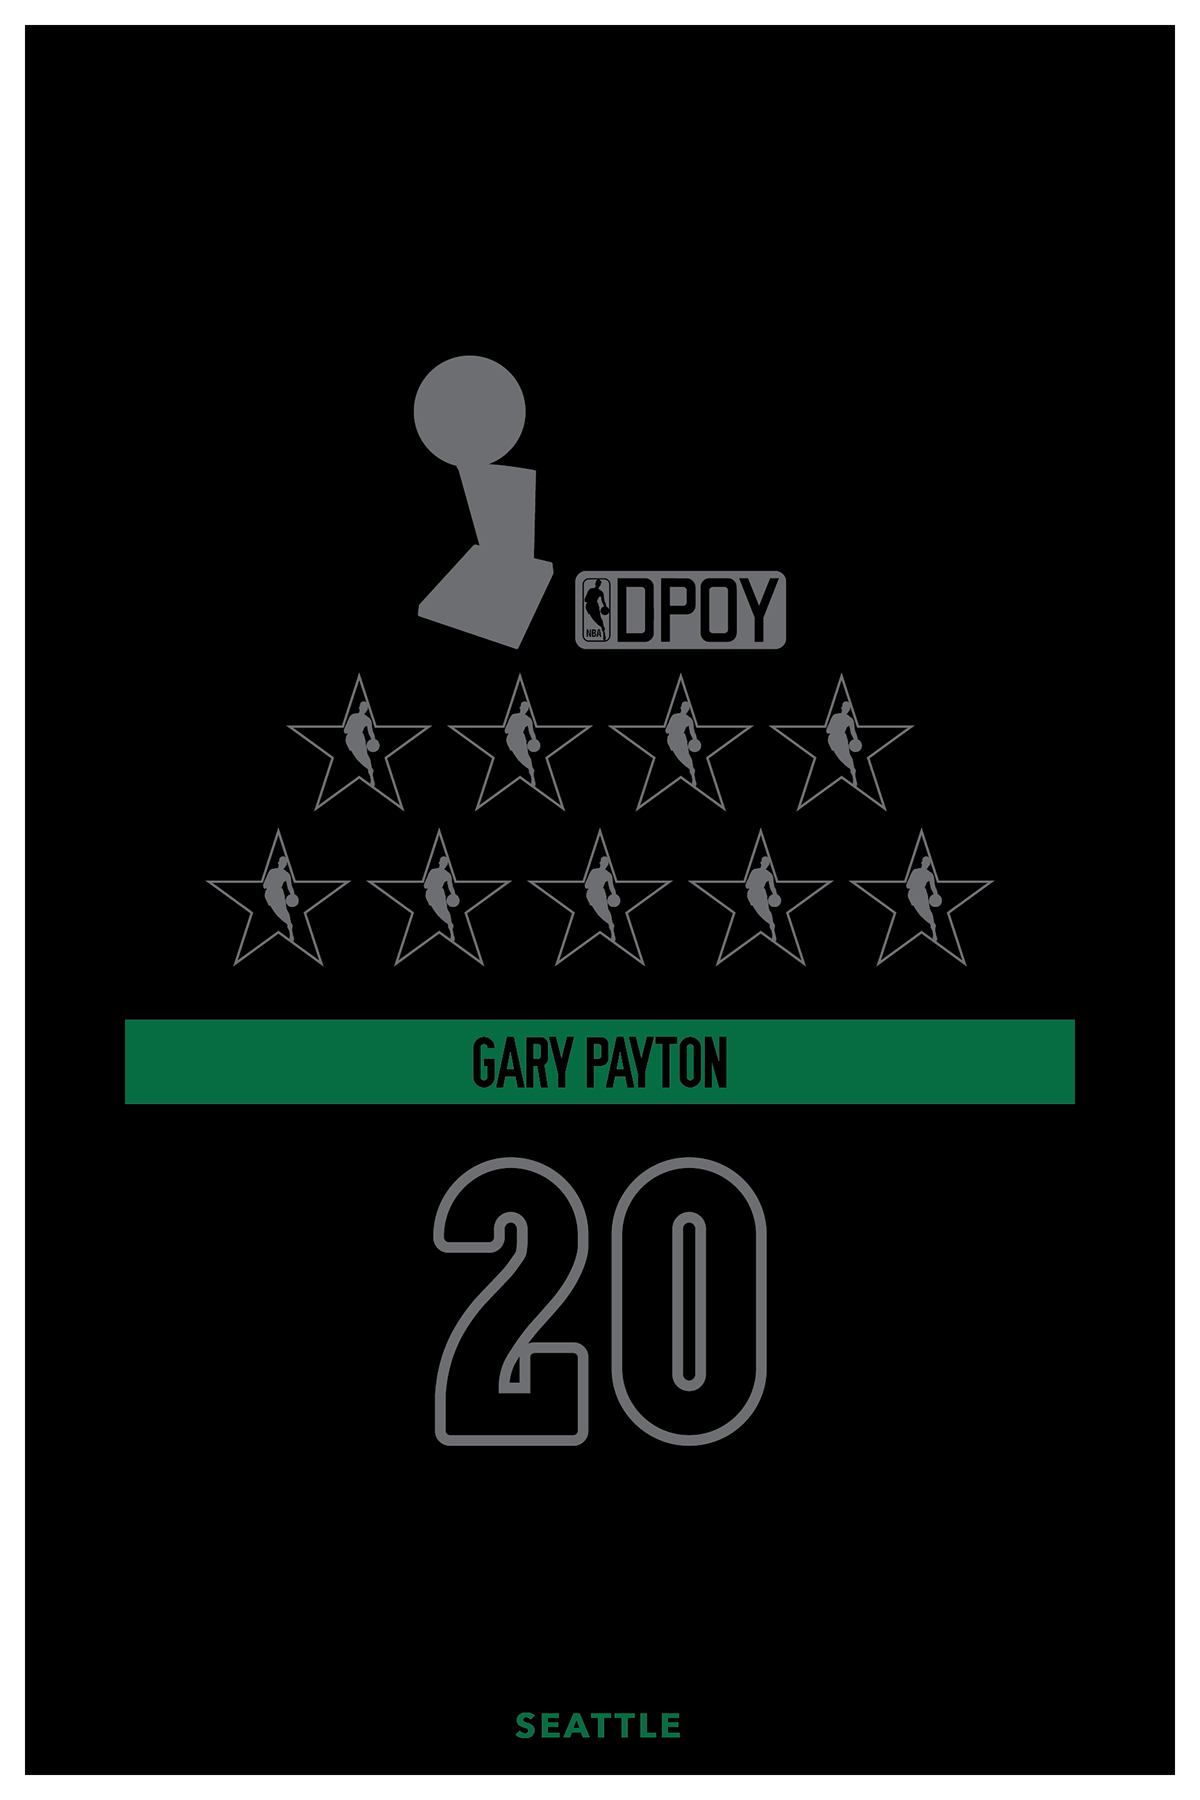 Gary Payton - Accolades